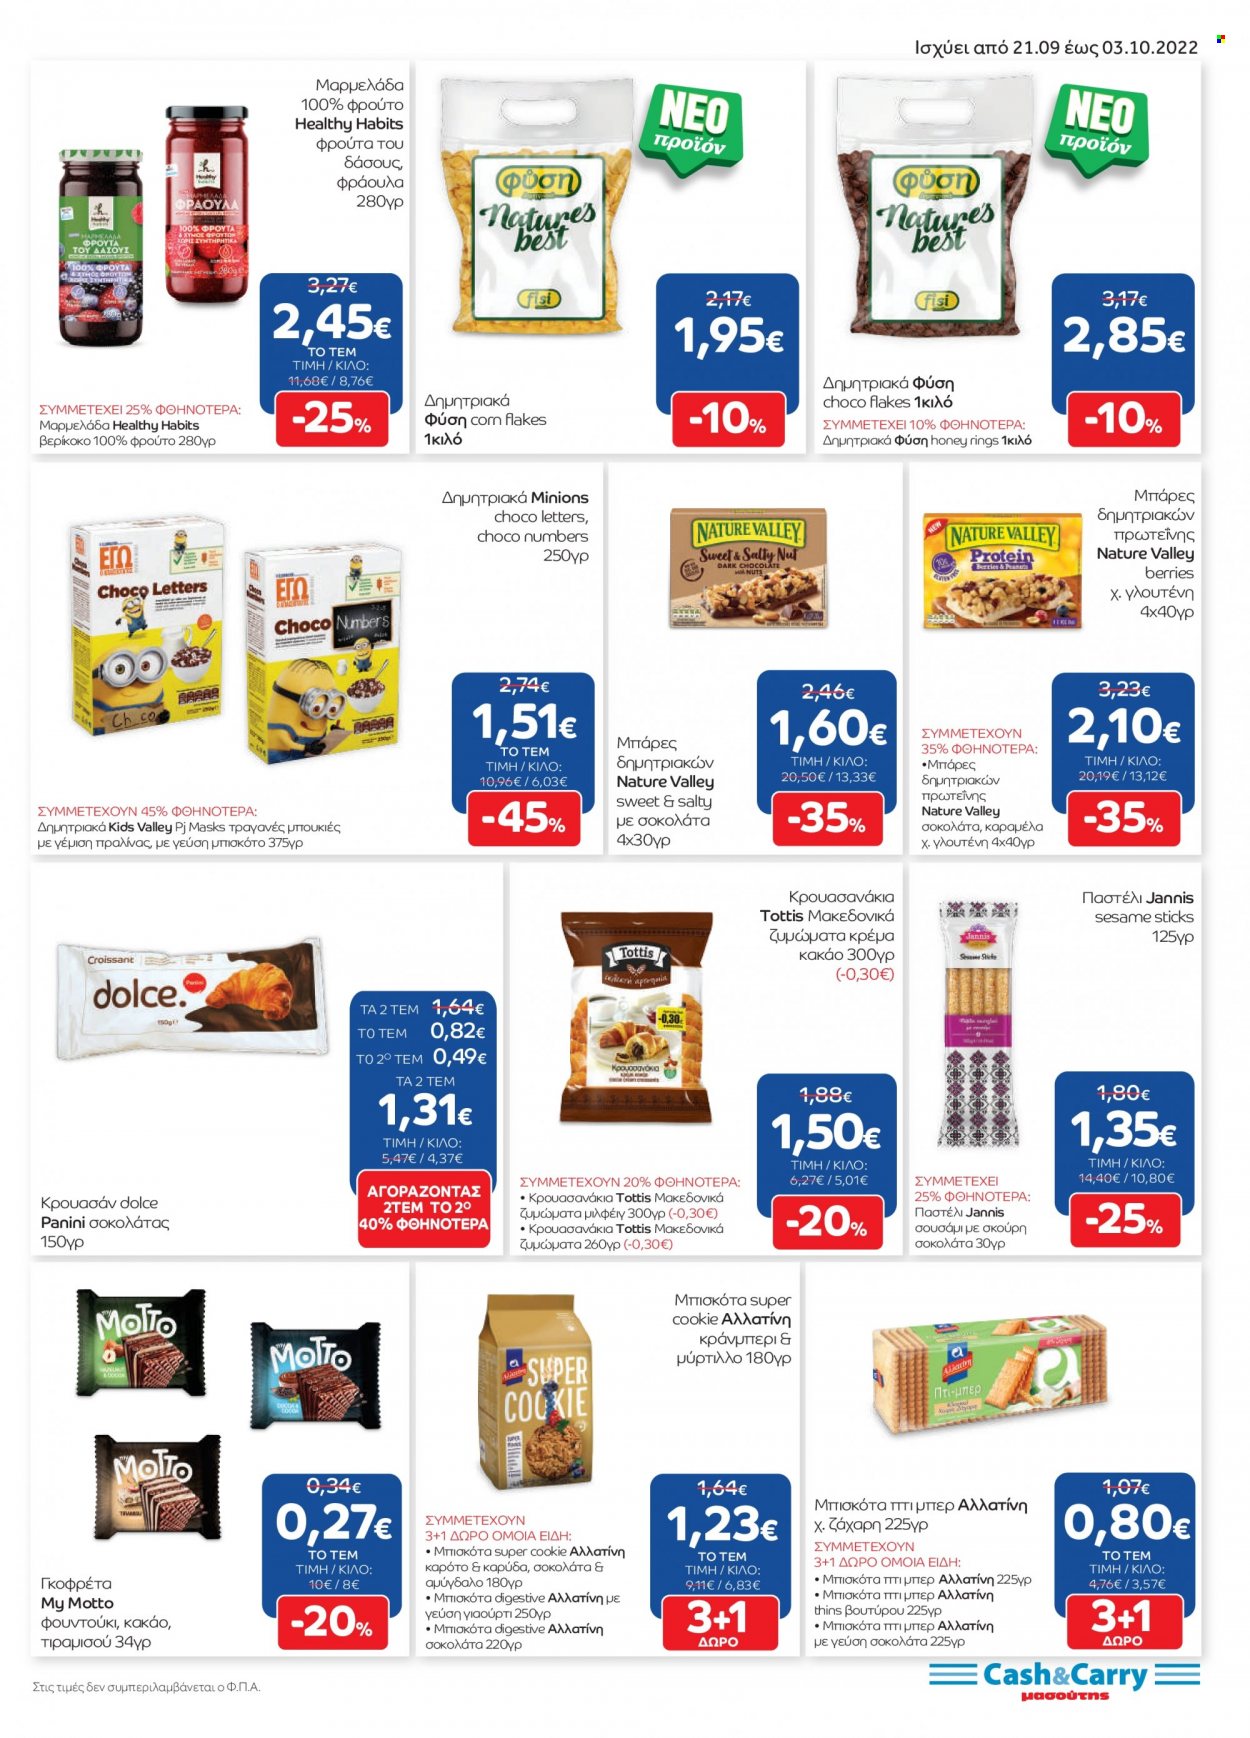 Φυλλάδια Masoutis Cash & Carry - 21.09.2022 - 03.10.2022 - Εκπτωτικά προϊόντα - μπισκότα, panini, γιαούρτι, ζάχαρη, μαρμελάδα, αμύγδαλα. Σελίδα 11.